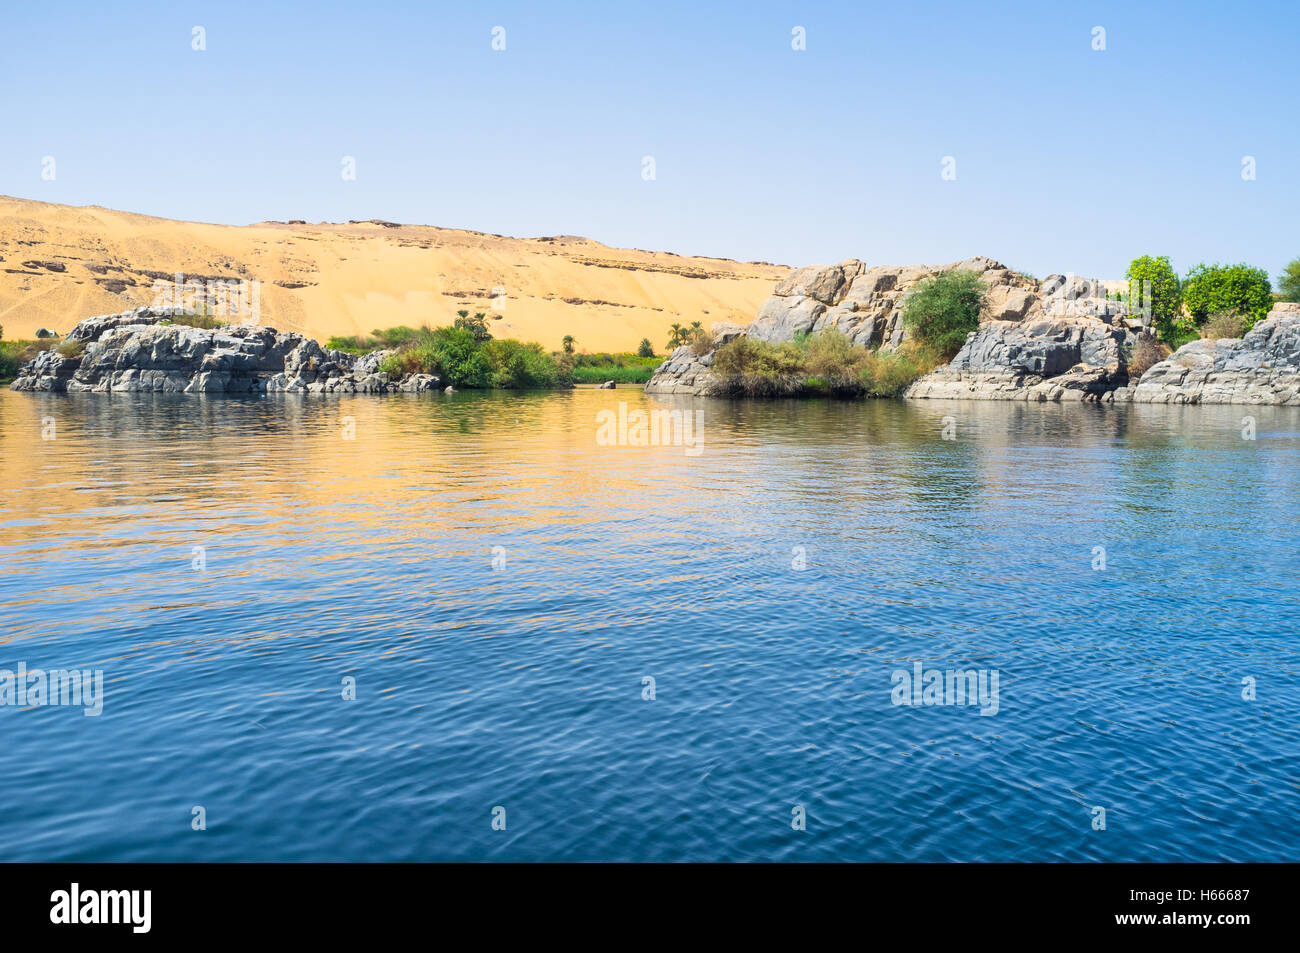 Les petits îlots rocheux à l'ouest du Nil entoure la rivière à côté de l'île Eléphantine, Assouan, Egypte. Banque D'Images